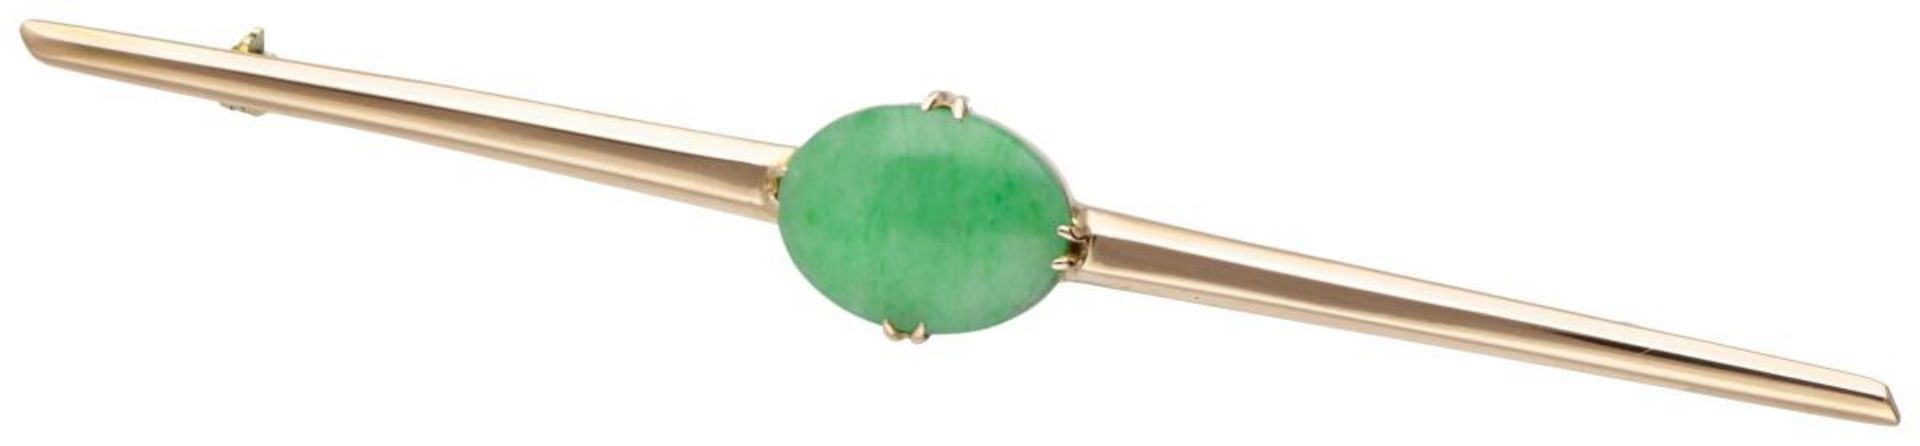 18K. Rose gold vintage bar brooch set with a green gemstone.